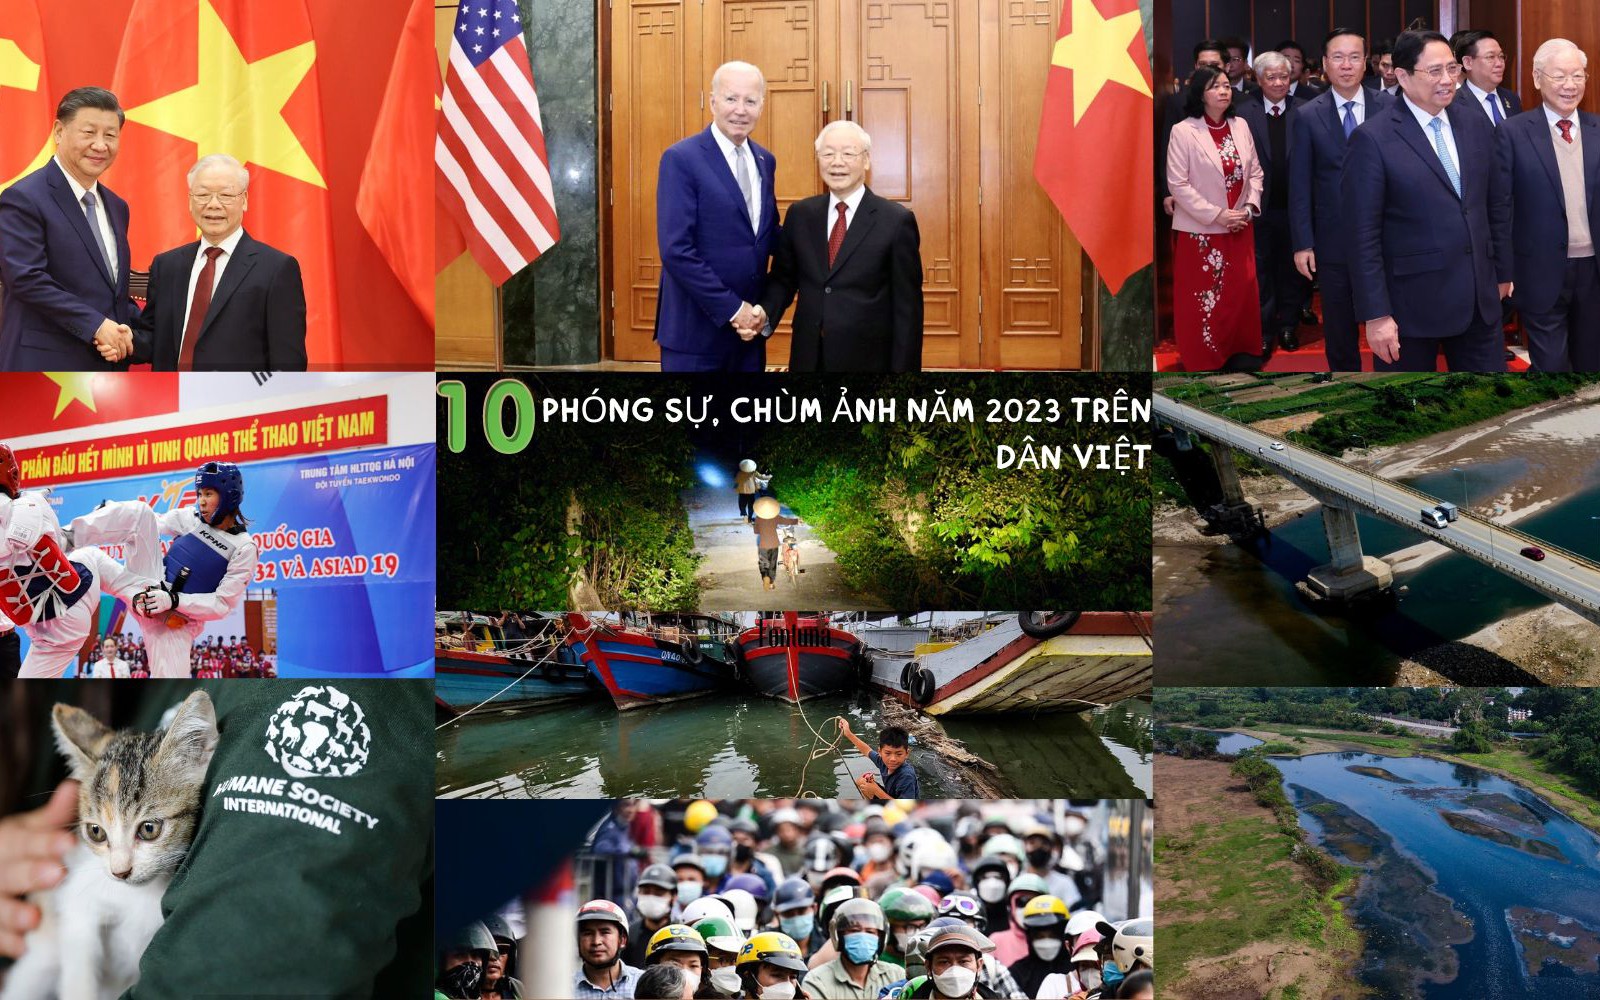 10 phóng sự, chùm ảnh ấn tượng, công phu được đăng tải trên Dân Việt năm 2023